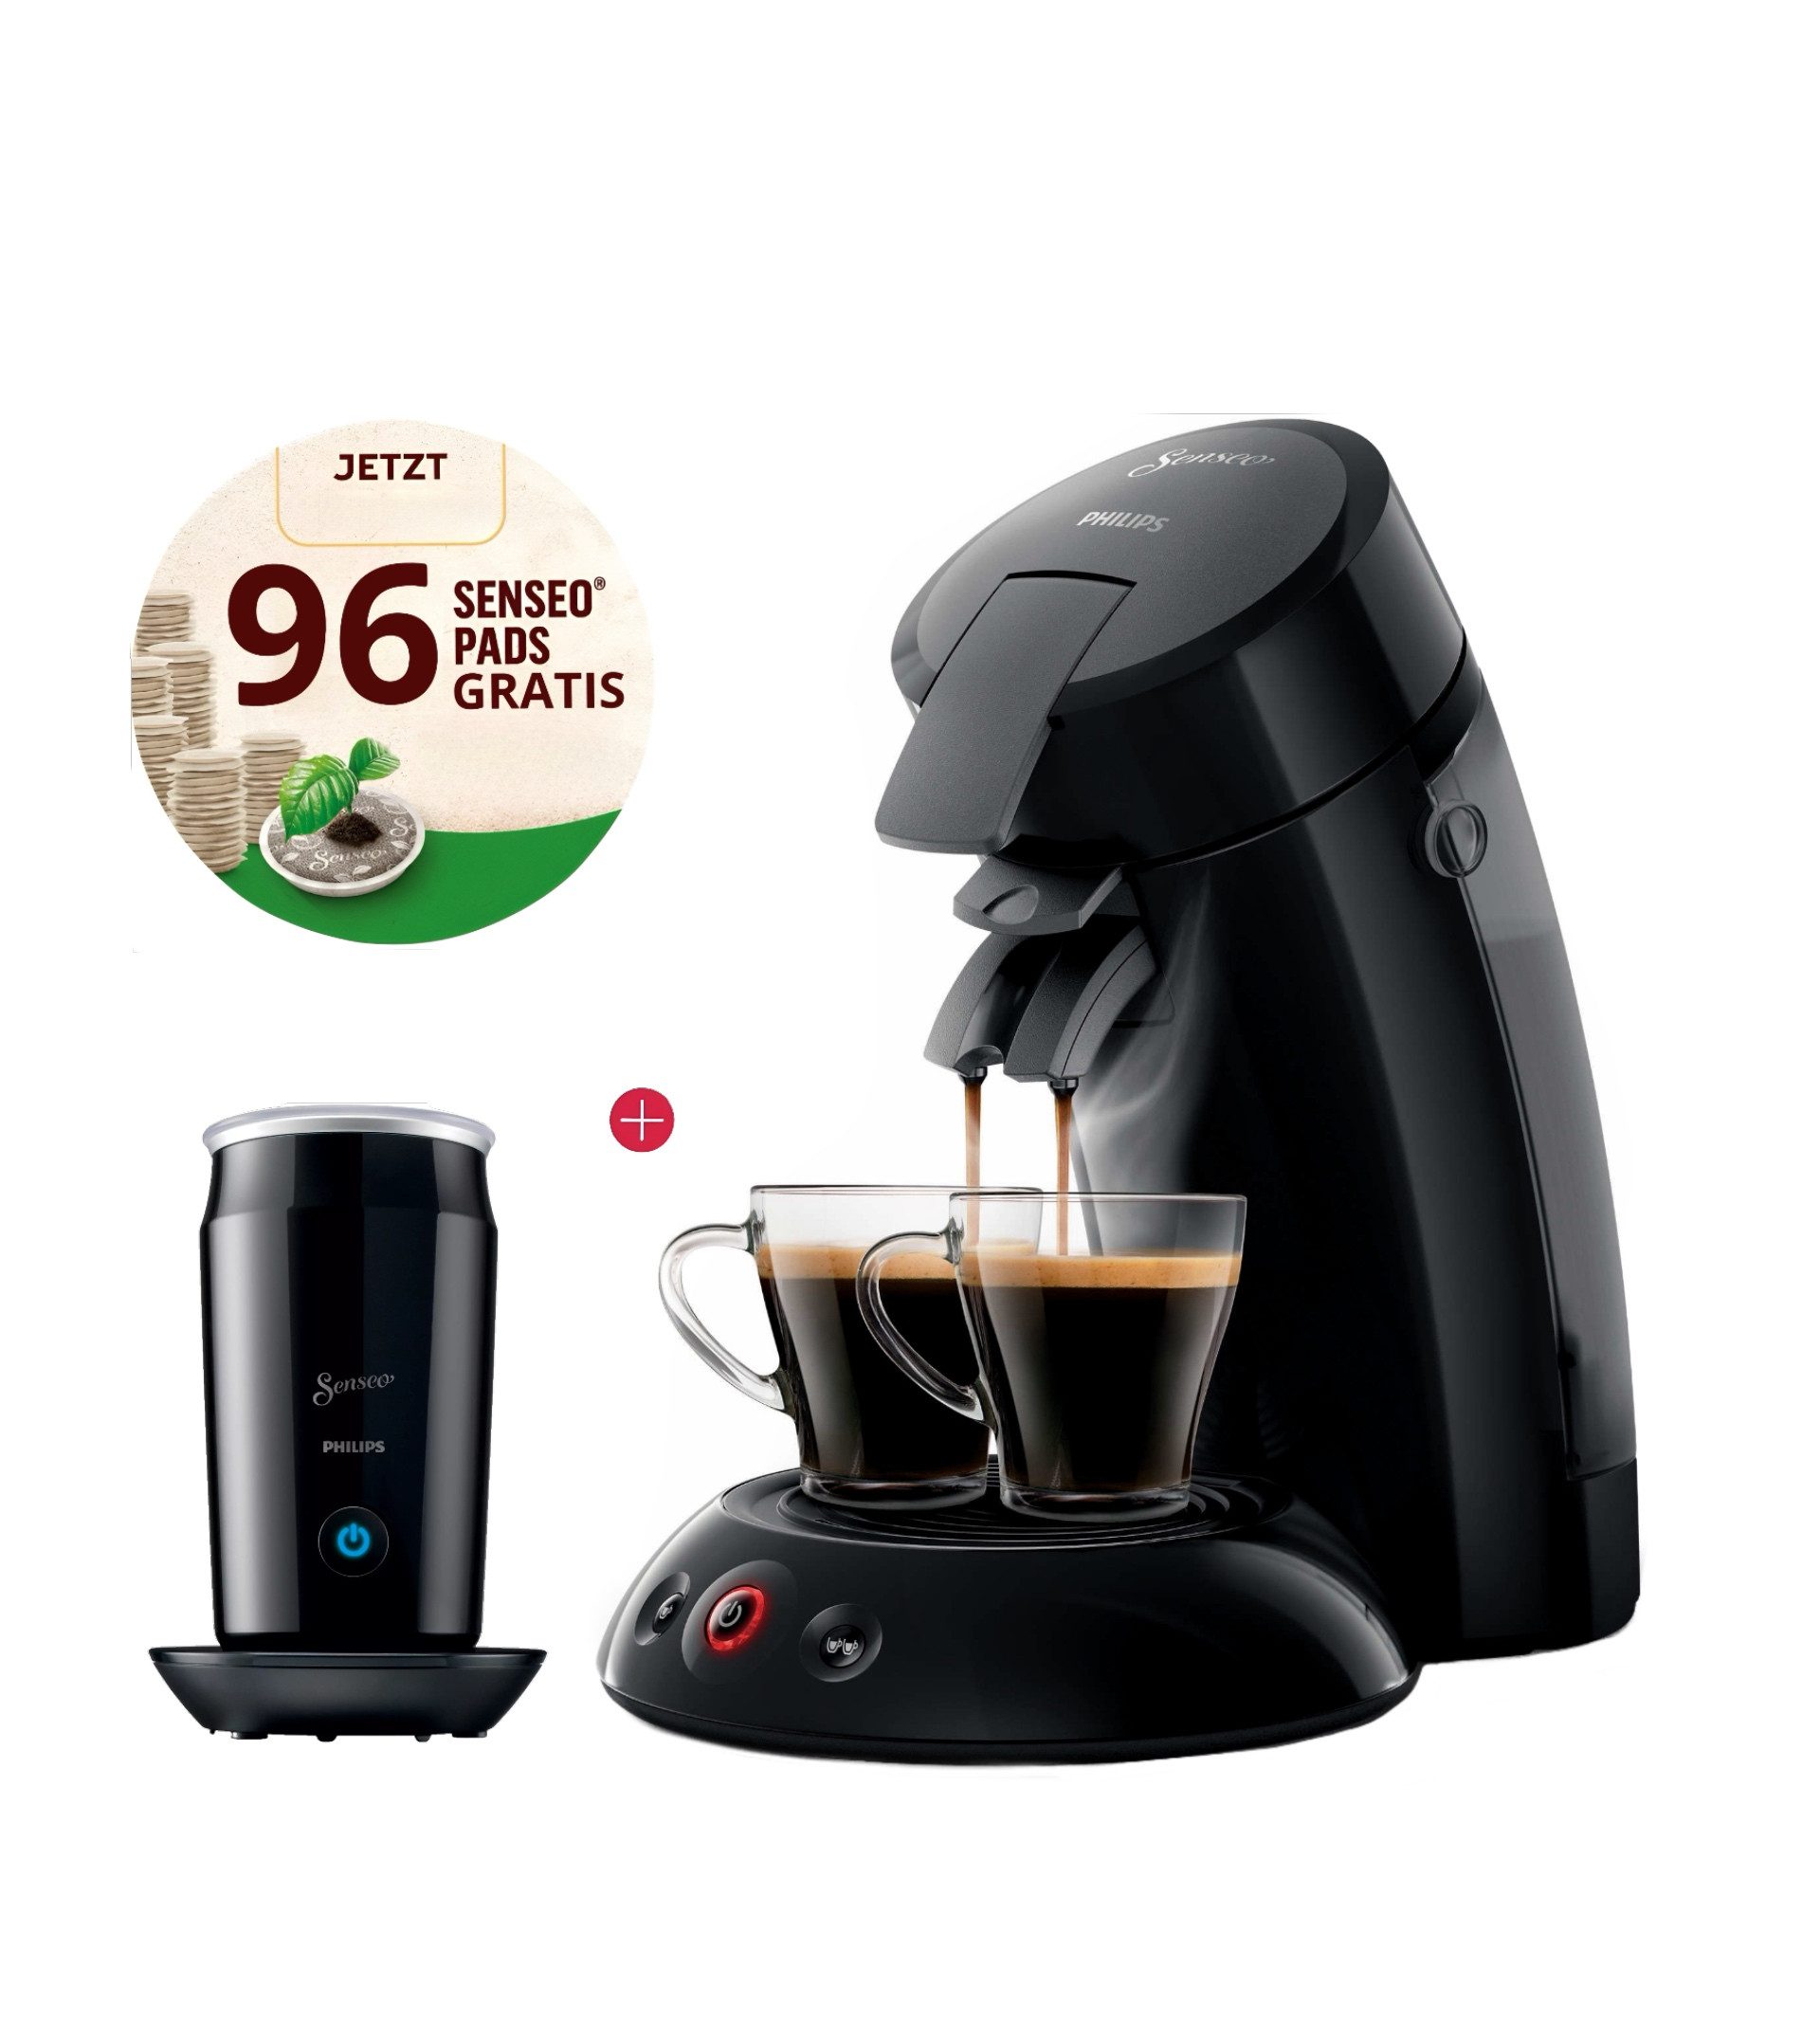 Philips Senseo Kapsel-/Kaffeepadmaschine Kaffeemaschine Original mit Milchaufschäumer, 96 Kaffeepads Gratis, 0,7l Kaffeekanne, Edelsthalfilter, Magnetisches Aufschäumen, Kaffee Boost und Crema Plus Technologien, Doppelte Kaffeezubereitung